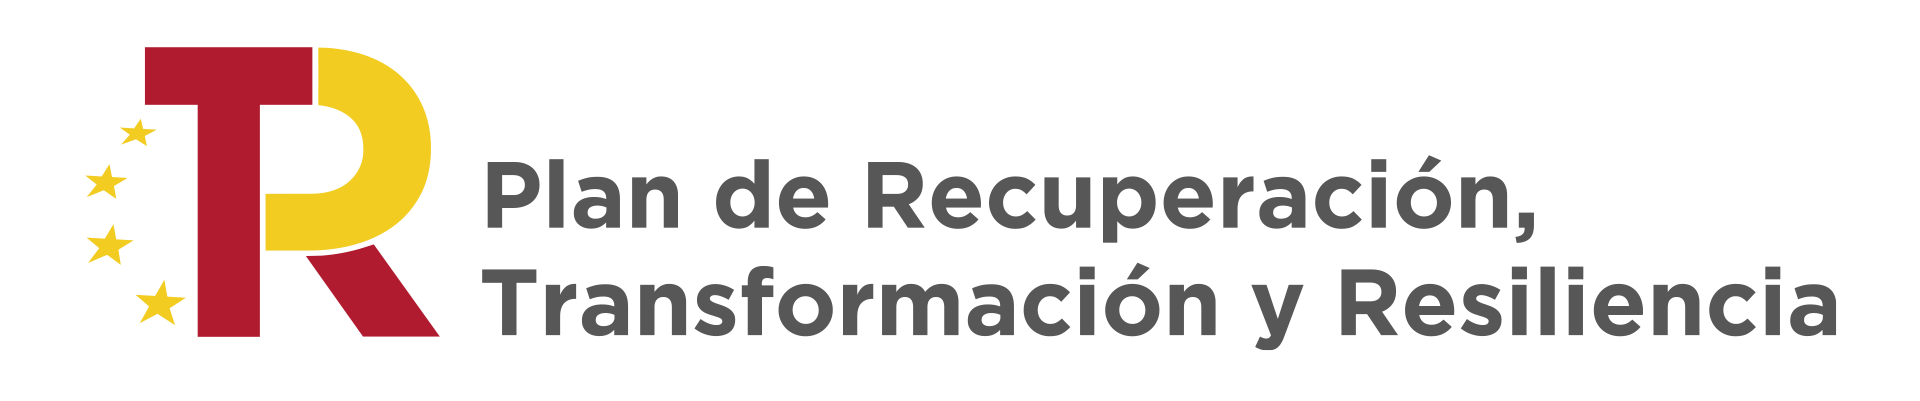 Logo Plan de recuperación Transformación y Resiliencia